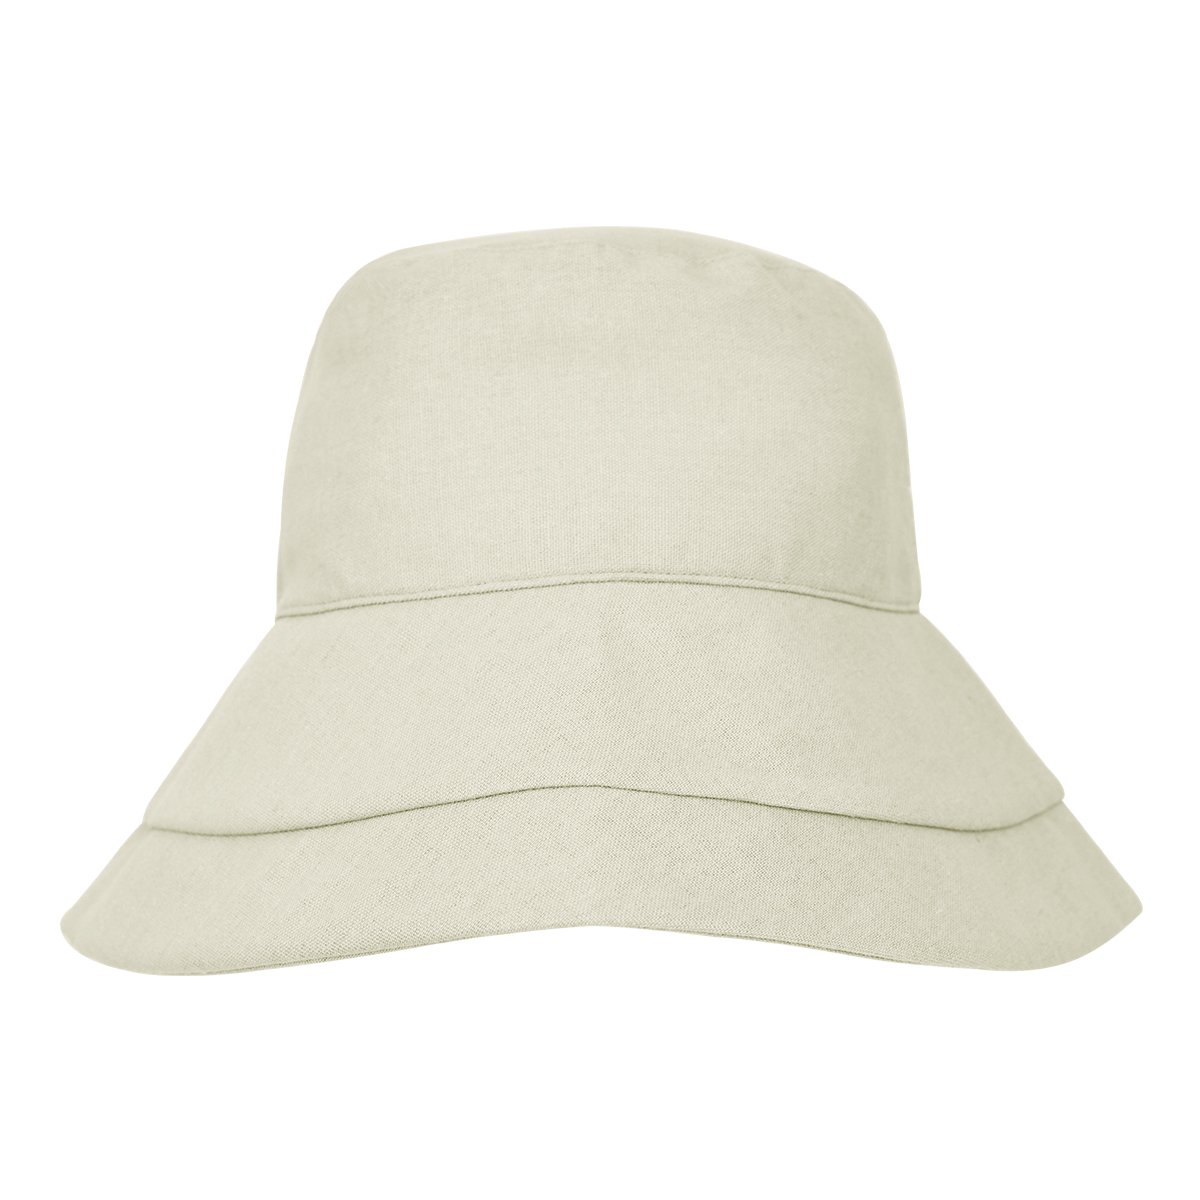 UVカット完全遮光帽子M レギュラー 遮光 帽子 カラーフェード防止 冷感素材 内側 調節 ストラッ...